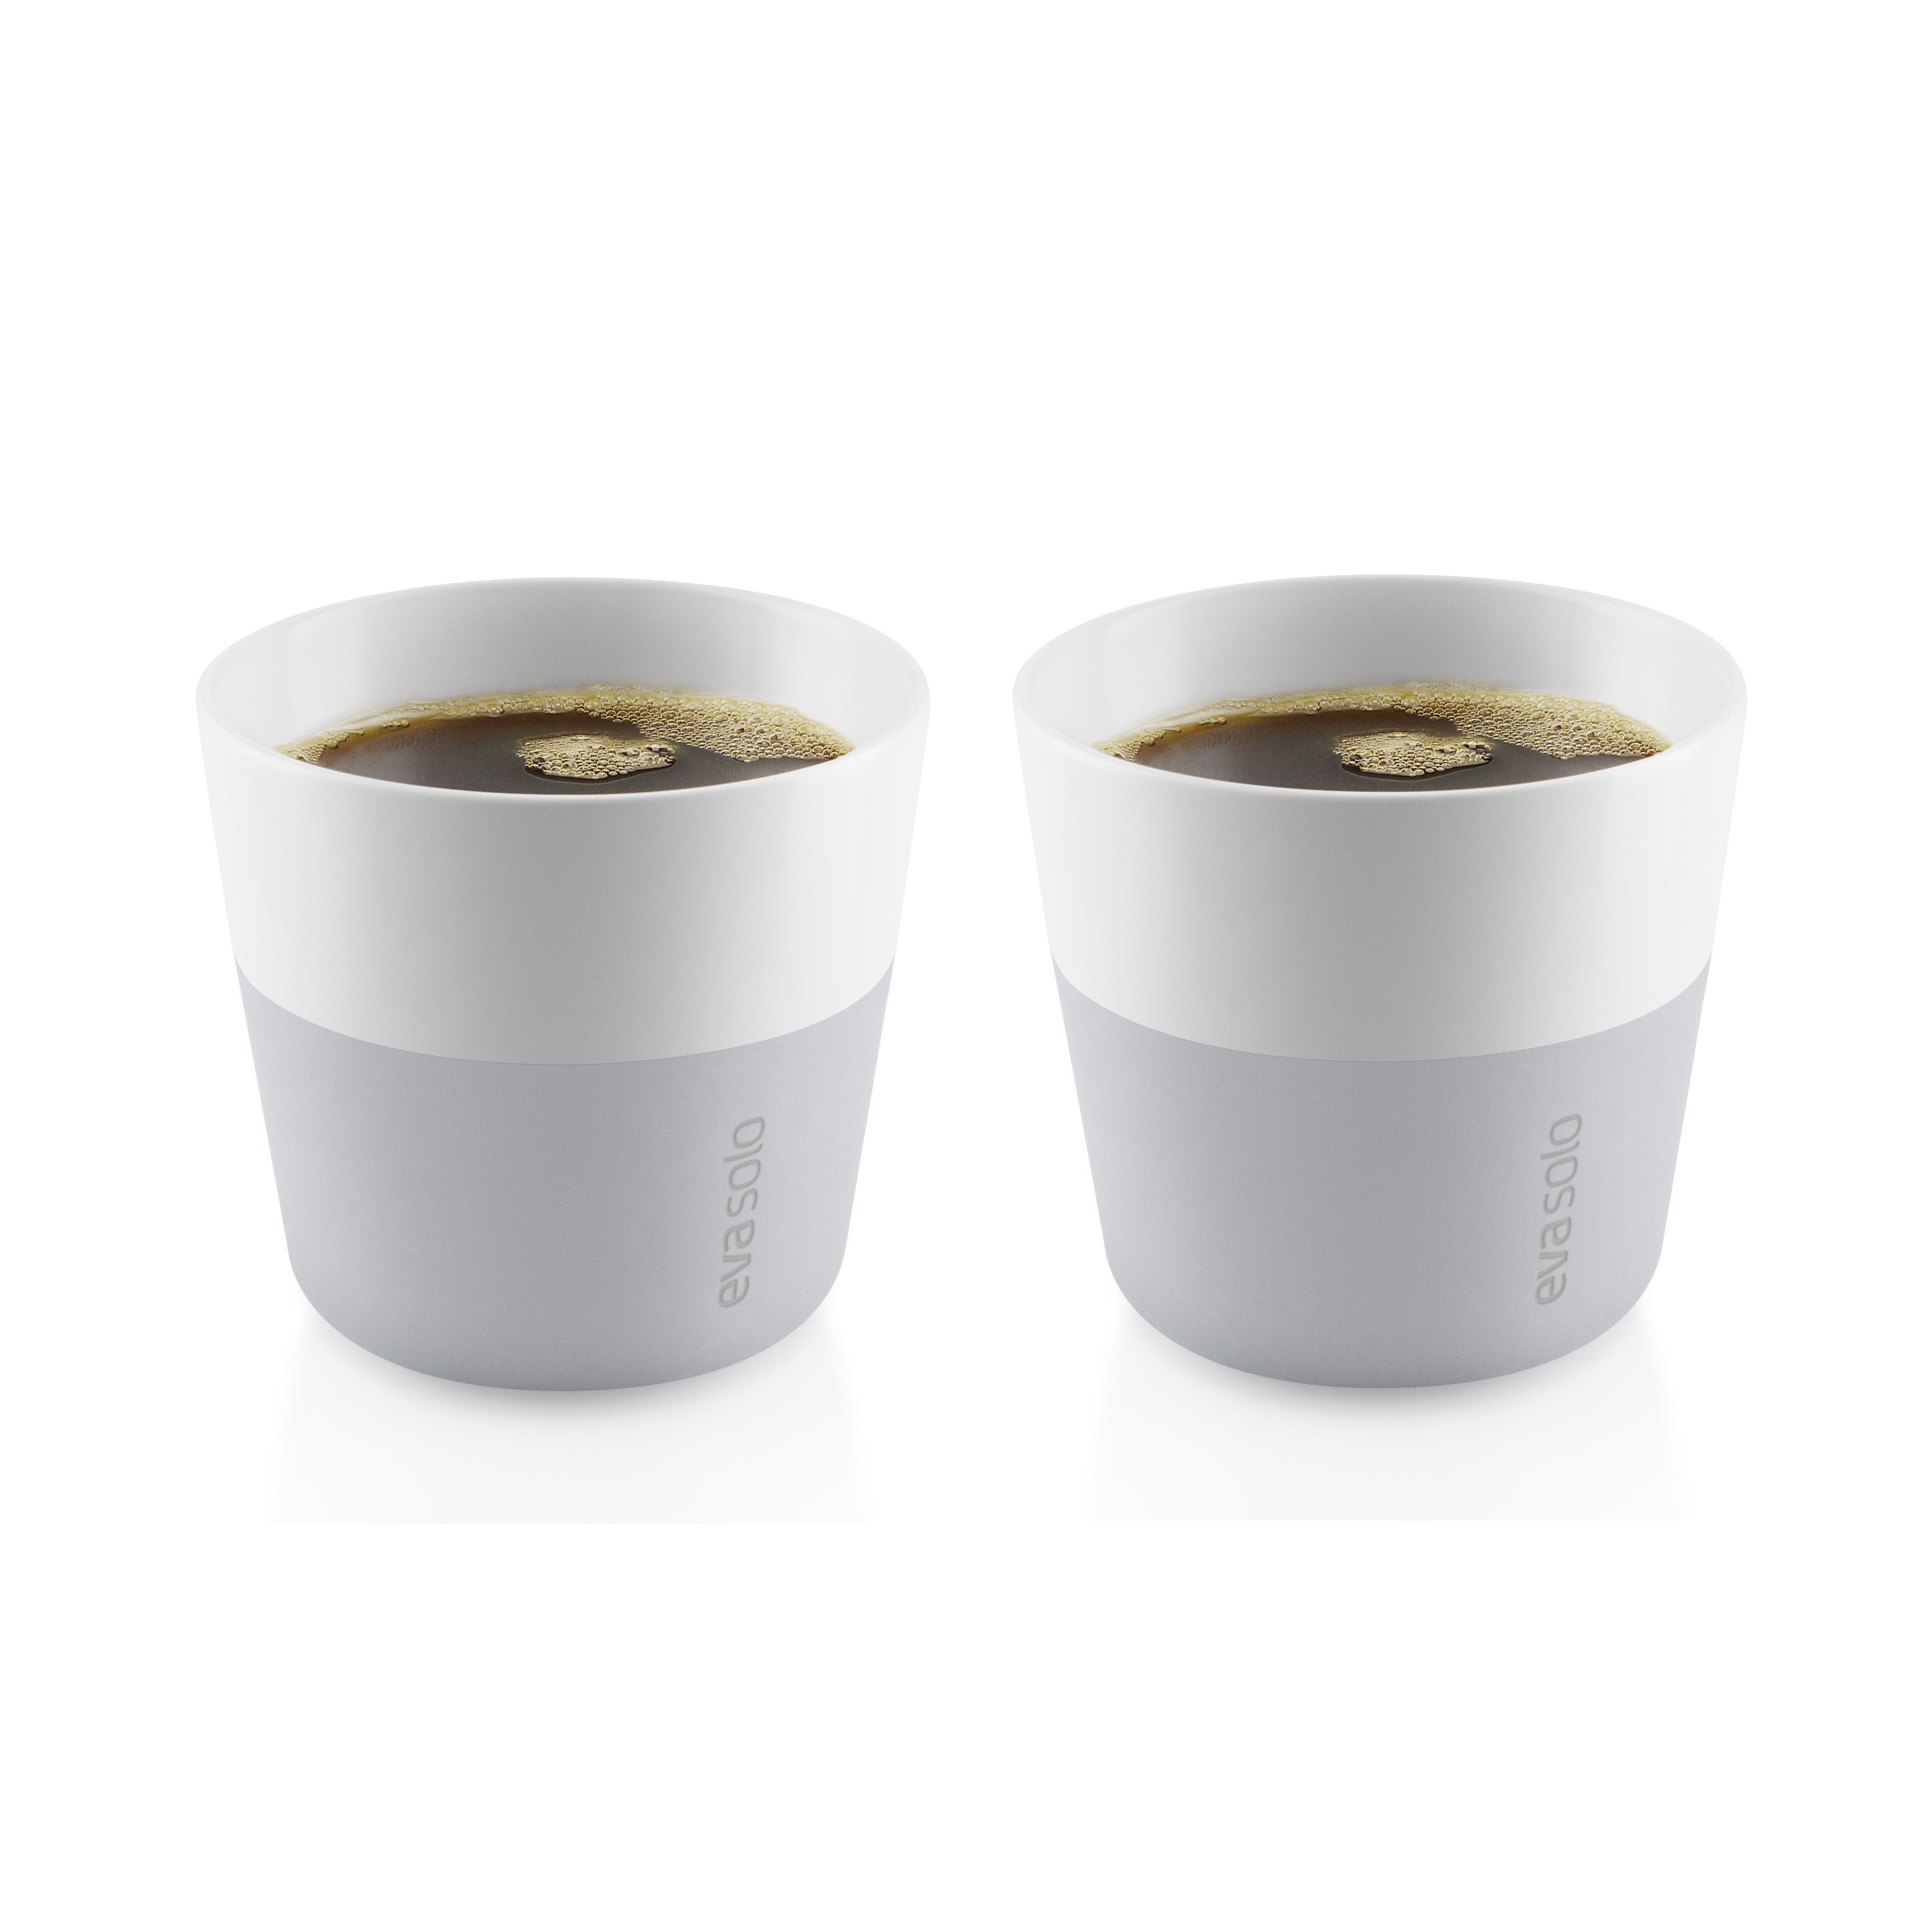 Lungo Cups “Mediterranean” 